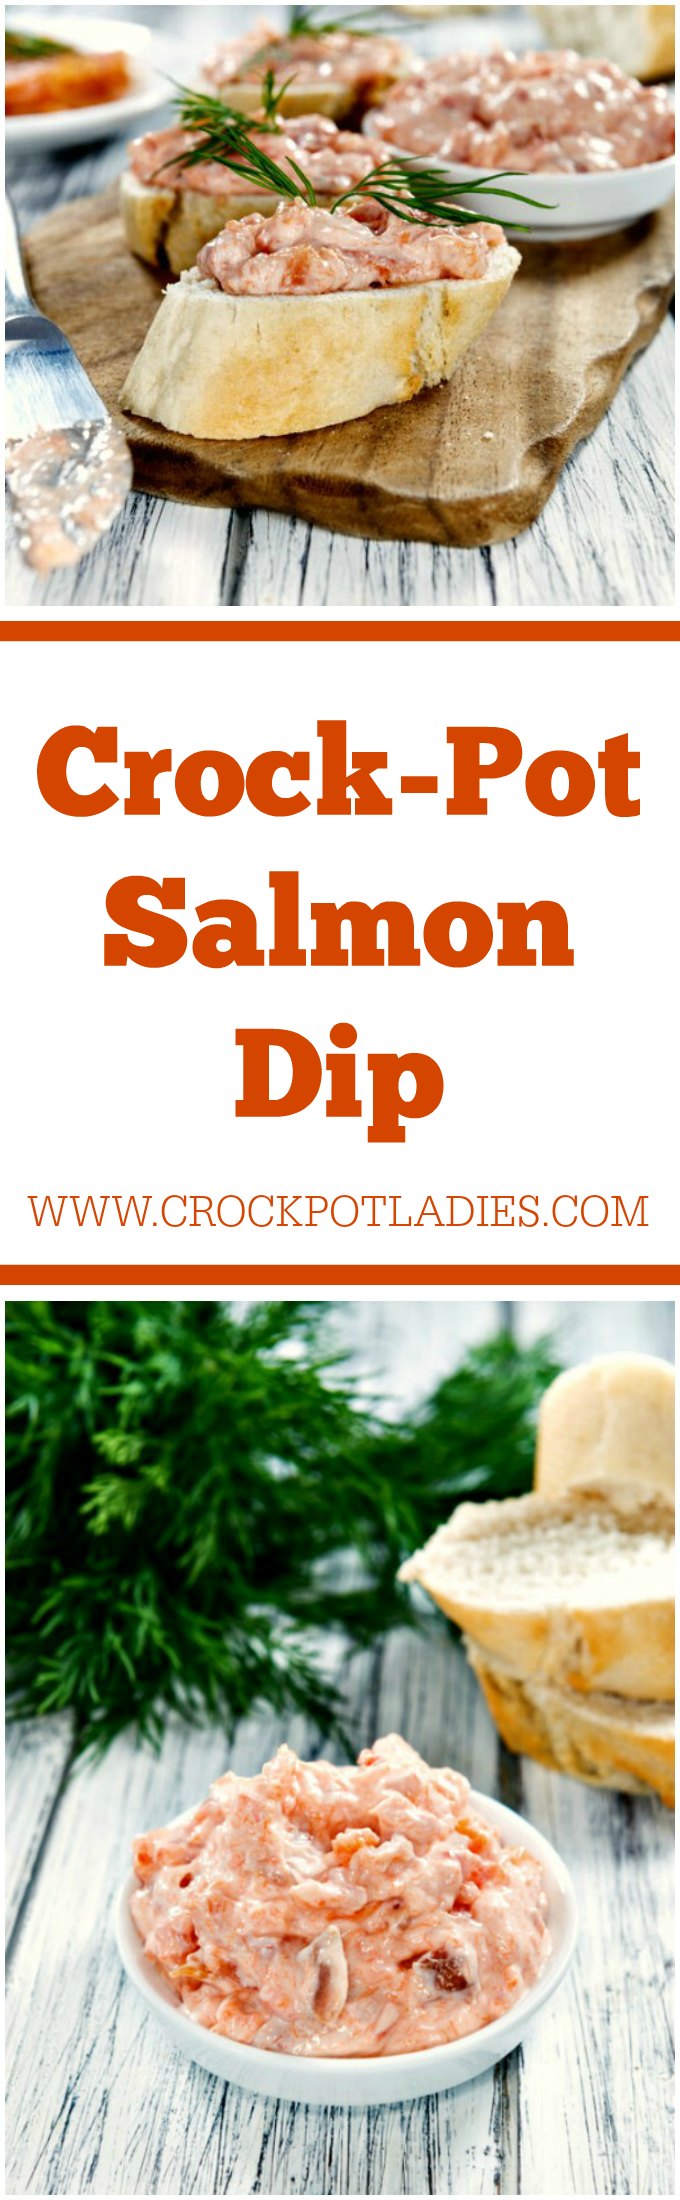 Crock-Pot Salmon Dip